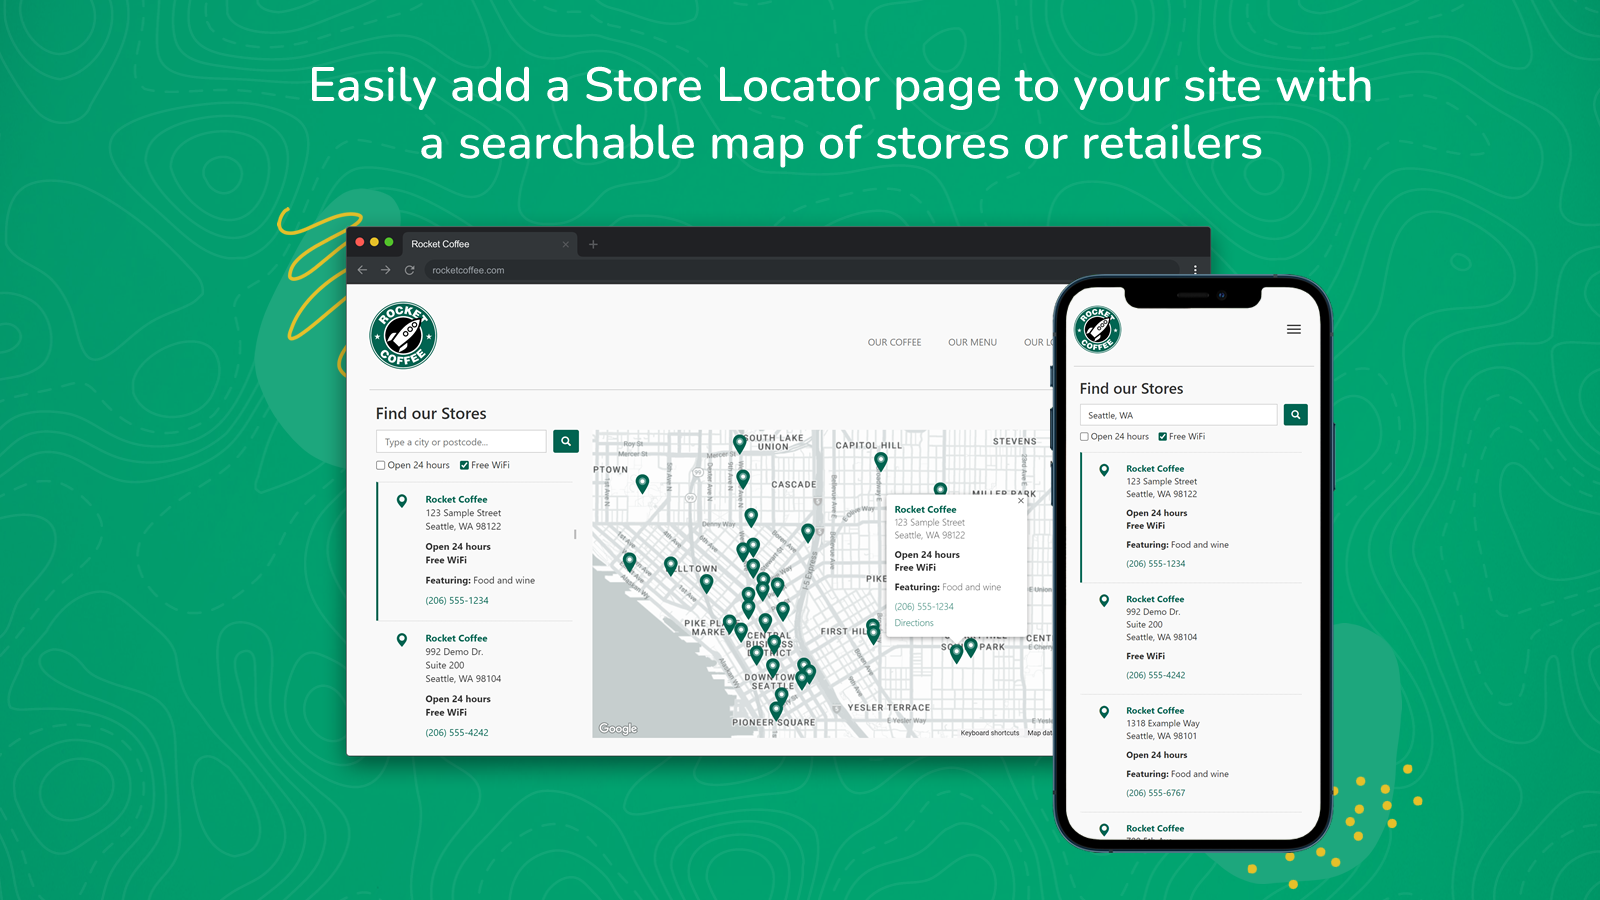 Adicione facilmente um mapa pesquisável de loja/revendedor ao seu site